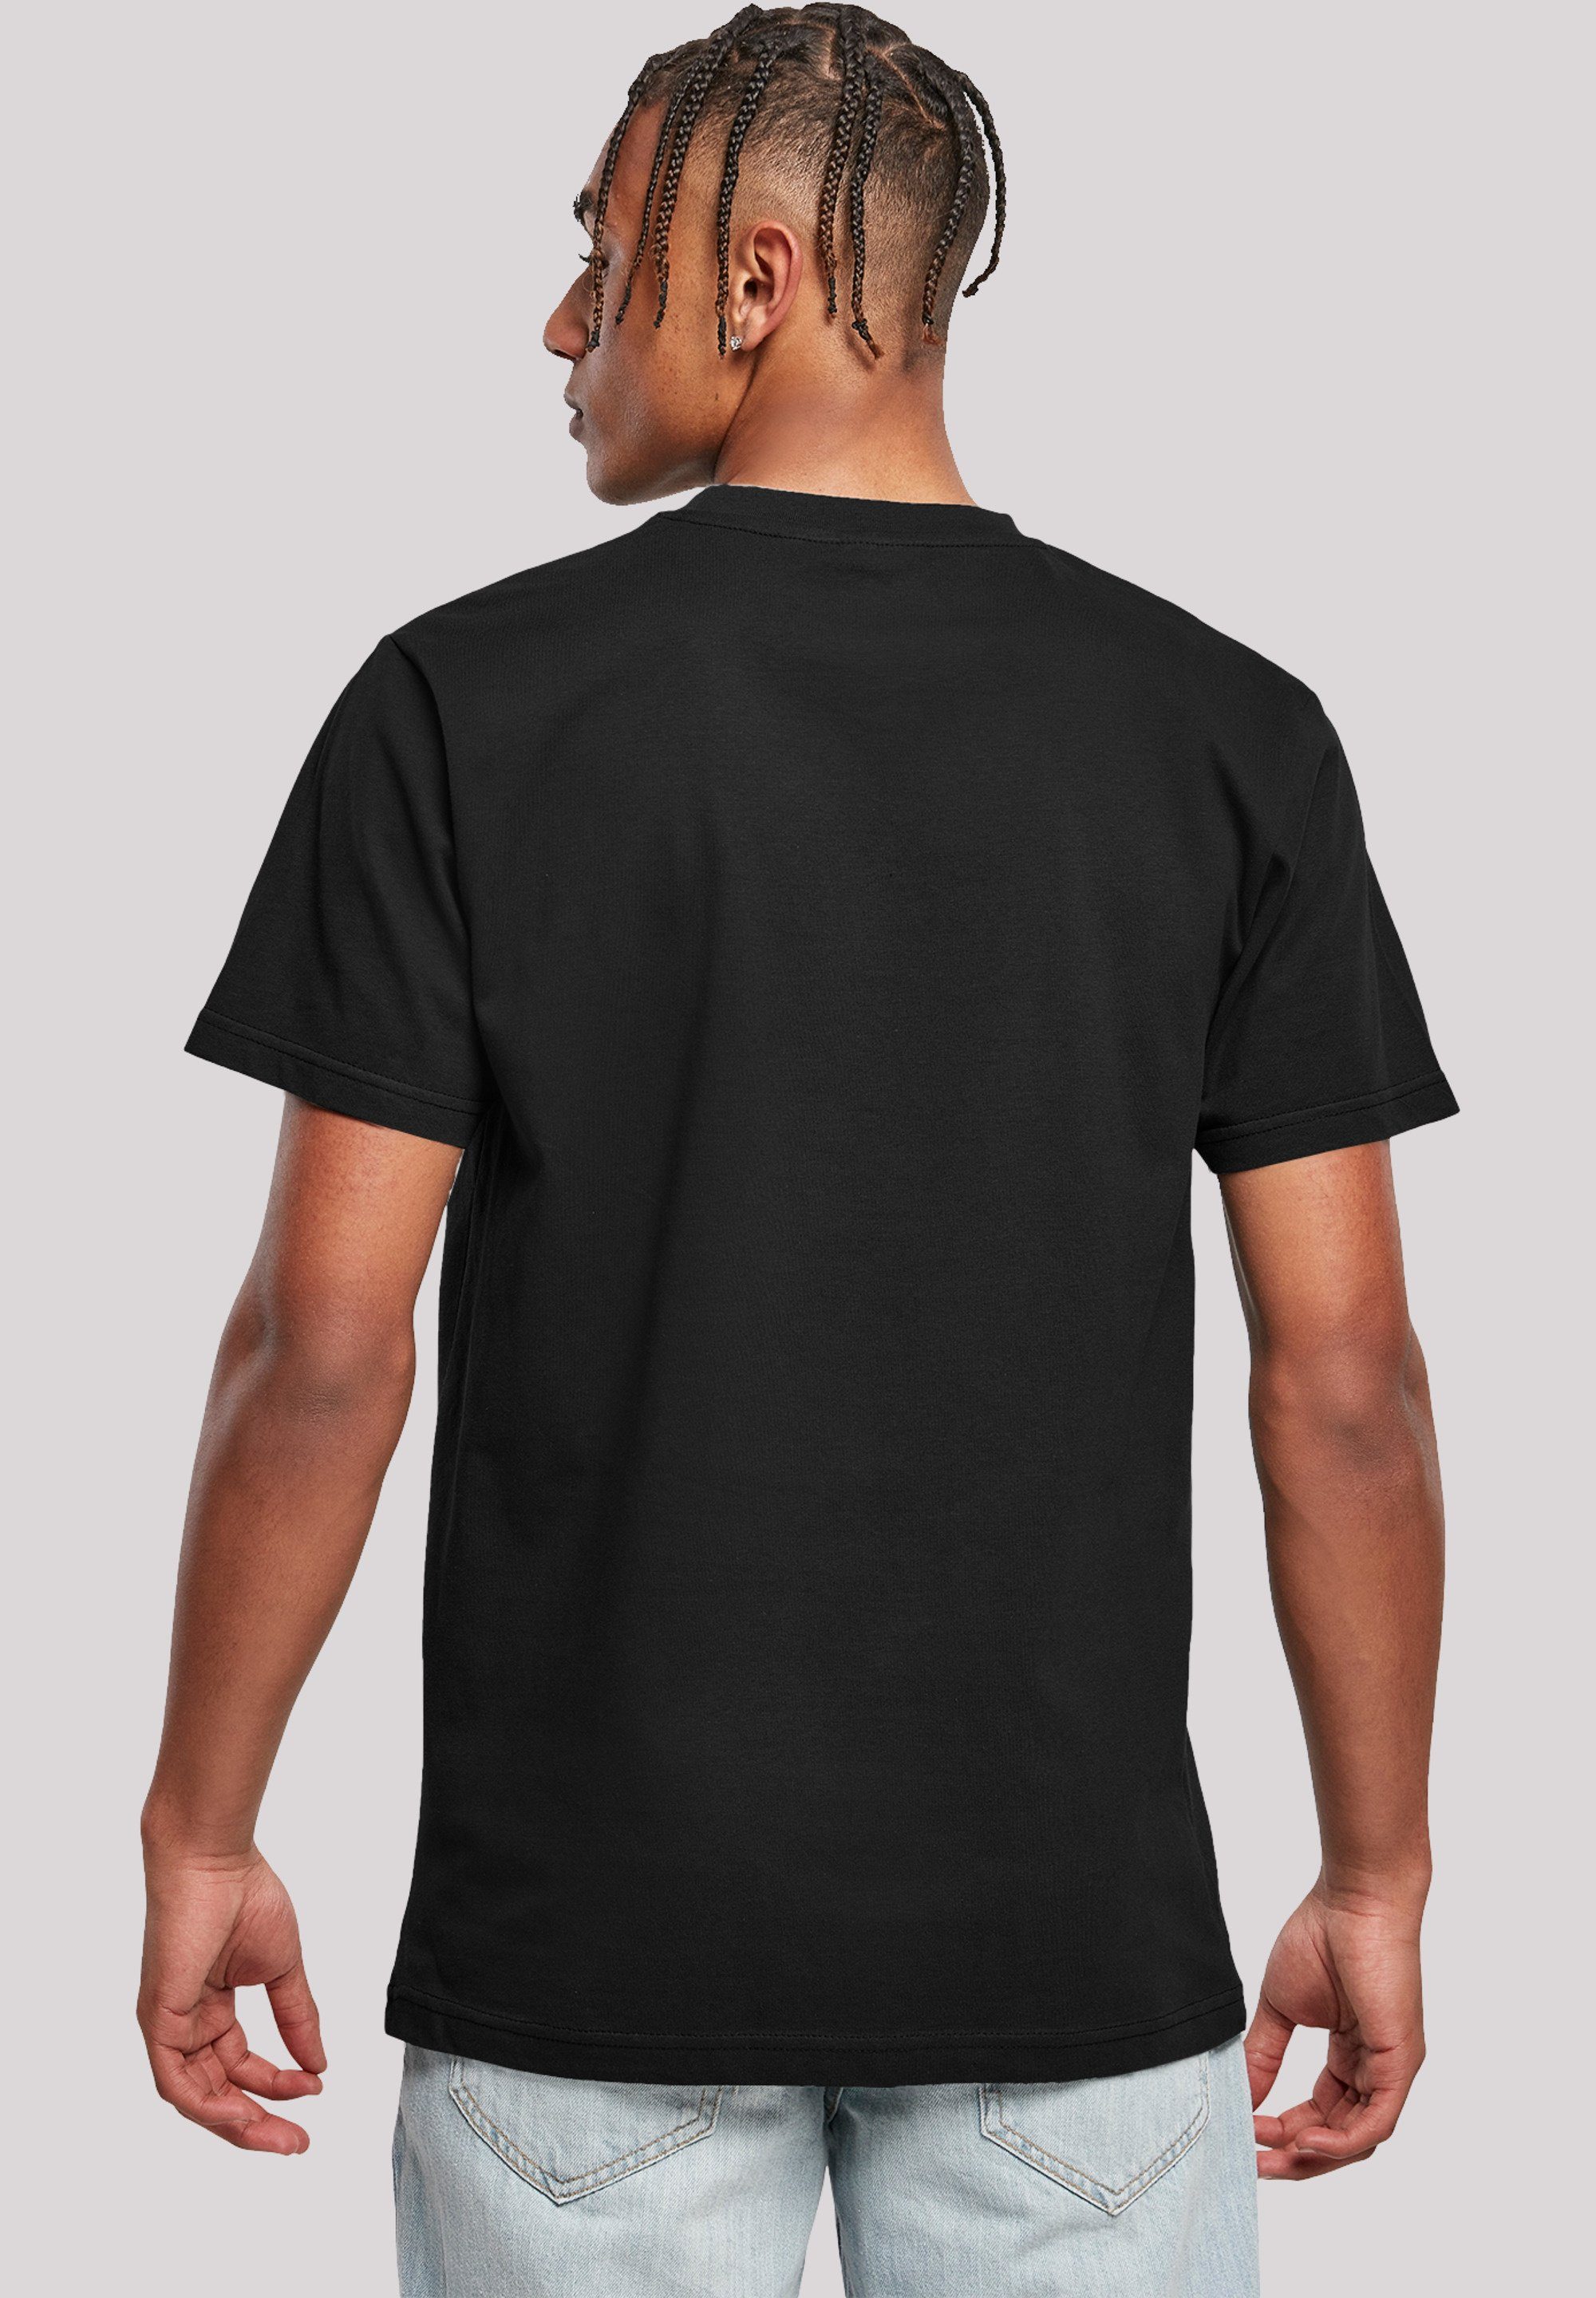 F4NT4STIC Winnie Poster Merch,Regular-Fit,Basic,Bedruckt Disney schwarz Puuh T-Shirt Herren,Premium